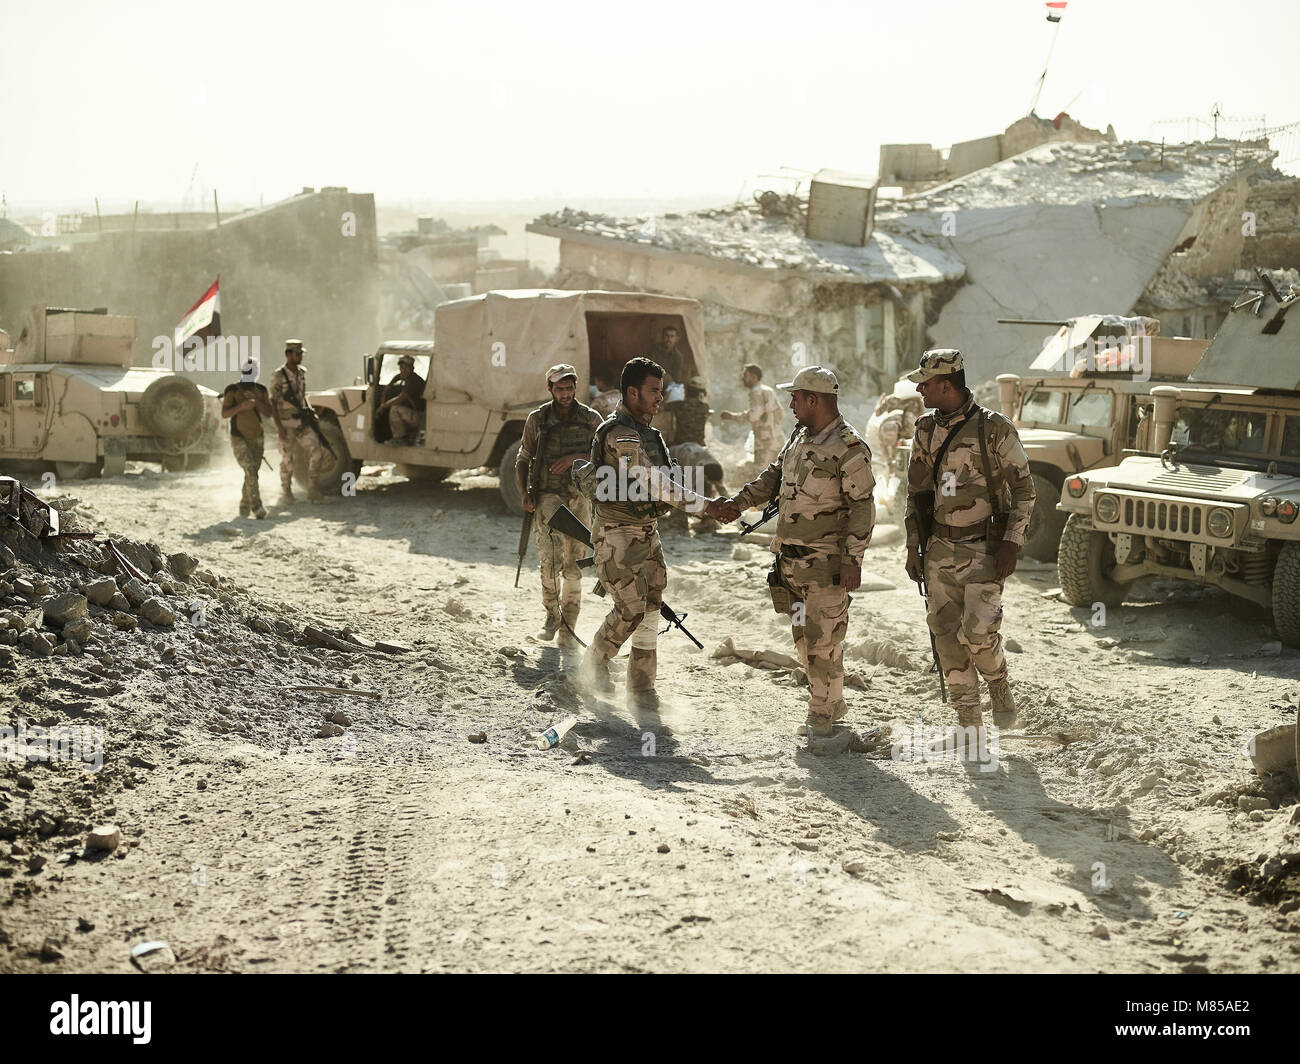 Irakische Armee Soldaten kommen in den letzten Frontlinie in West Mosul. Die Stadt Mosul im Nordirak hat unter islamischen Staat militanten wurde für 3 Jahre, seit Juni 2014. Im Juli 2017 die Streitkräfte der Koalition geführt von der irakischen Armee hat endlich befreit die Stadt aus der Hand von Terroristen. Stockfoto